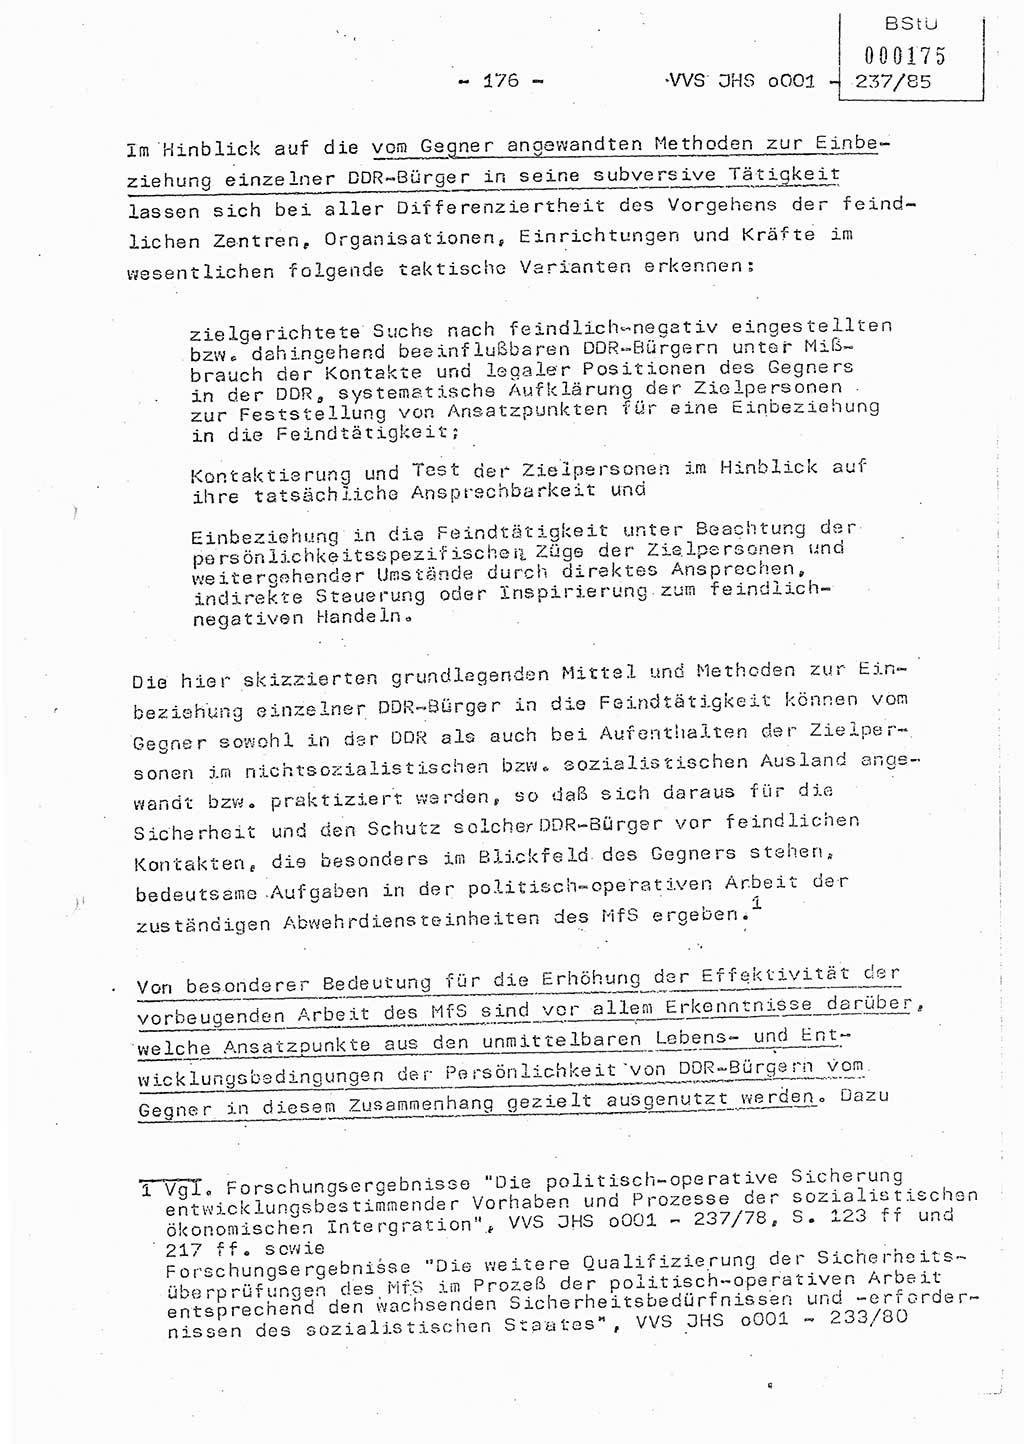 Dissertation Oberstleutnant Peter Jakulski (JHS), Oberstleutnat Christian Rudolph (HA Ⅸ), Major Horst Böttger (ZMD), Major Wolfgang Grüneberg (JHS), Major Albert Meutsch (JHS), Ministerium für Staatssicherheit (MfS) [Deutsche Demokratische Republik (DDR)], Juristische Hochschule (JHS), Vertrauliche Verschlußsache (VVS) o001-237/85, Potsdam 1985, Seite 176 (Diss. MfS DDR JHS VVS o001-237/85 1985, S. 176)